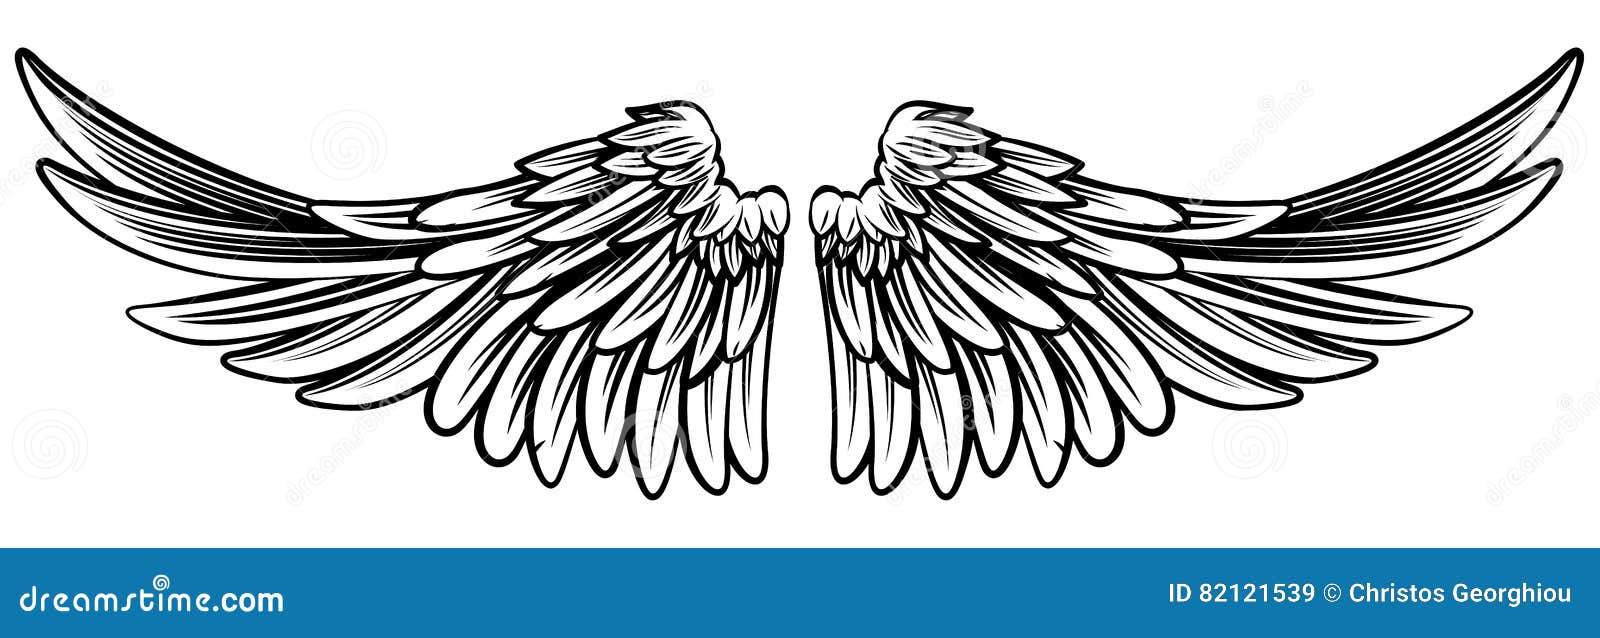 spread pair of angel or eagle wings